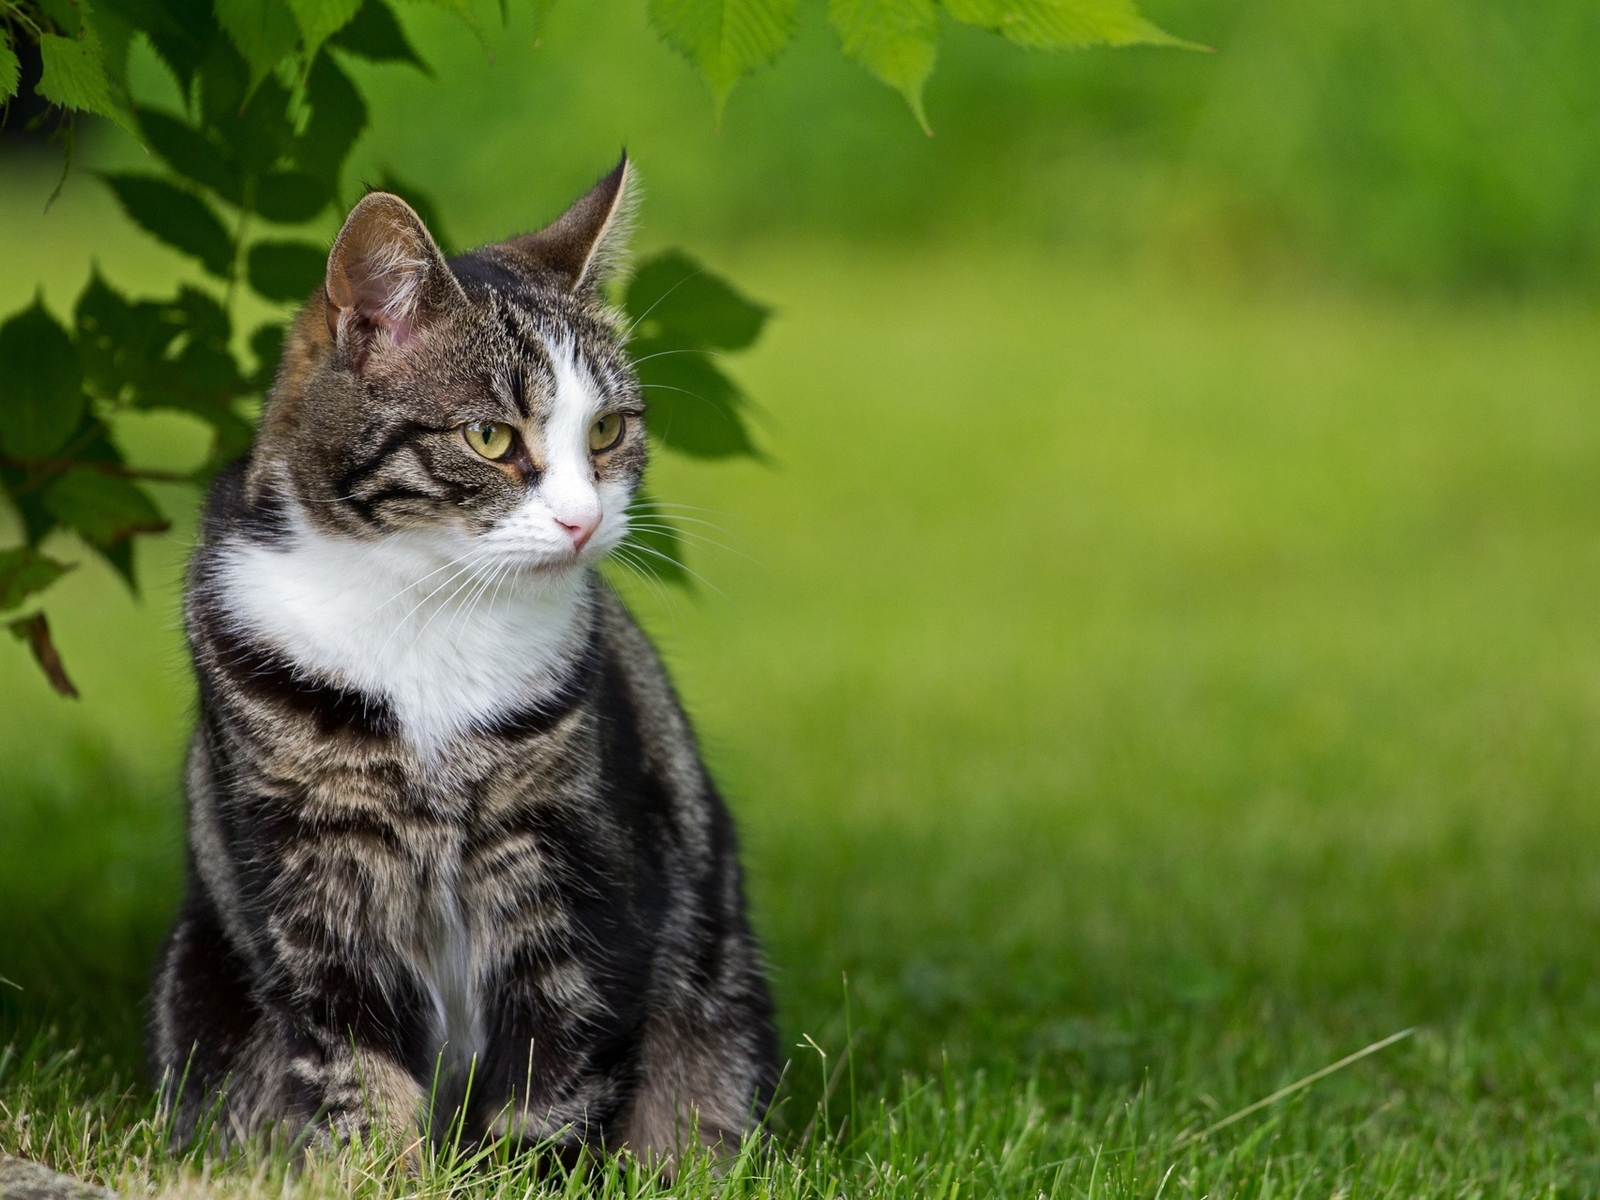 Картинка: Кошка, кот, шерсть, сидит, взгляд, листья, трава, природа, лето